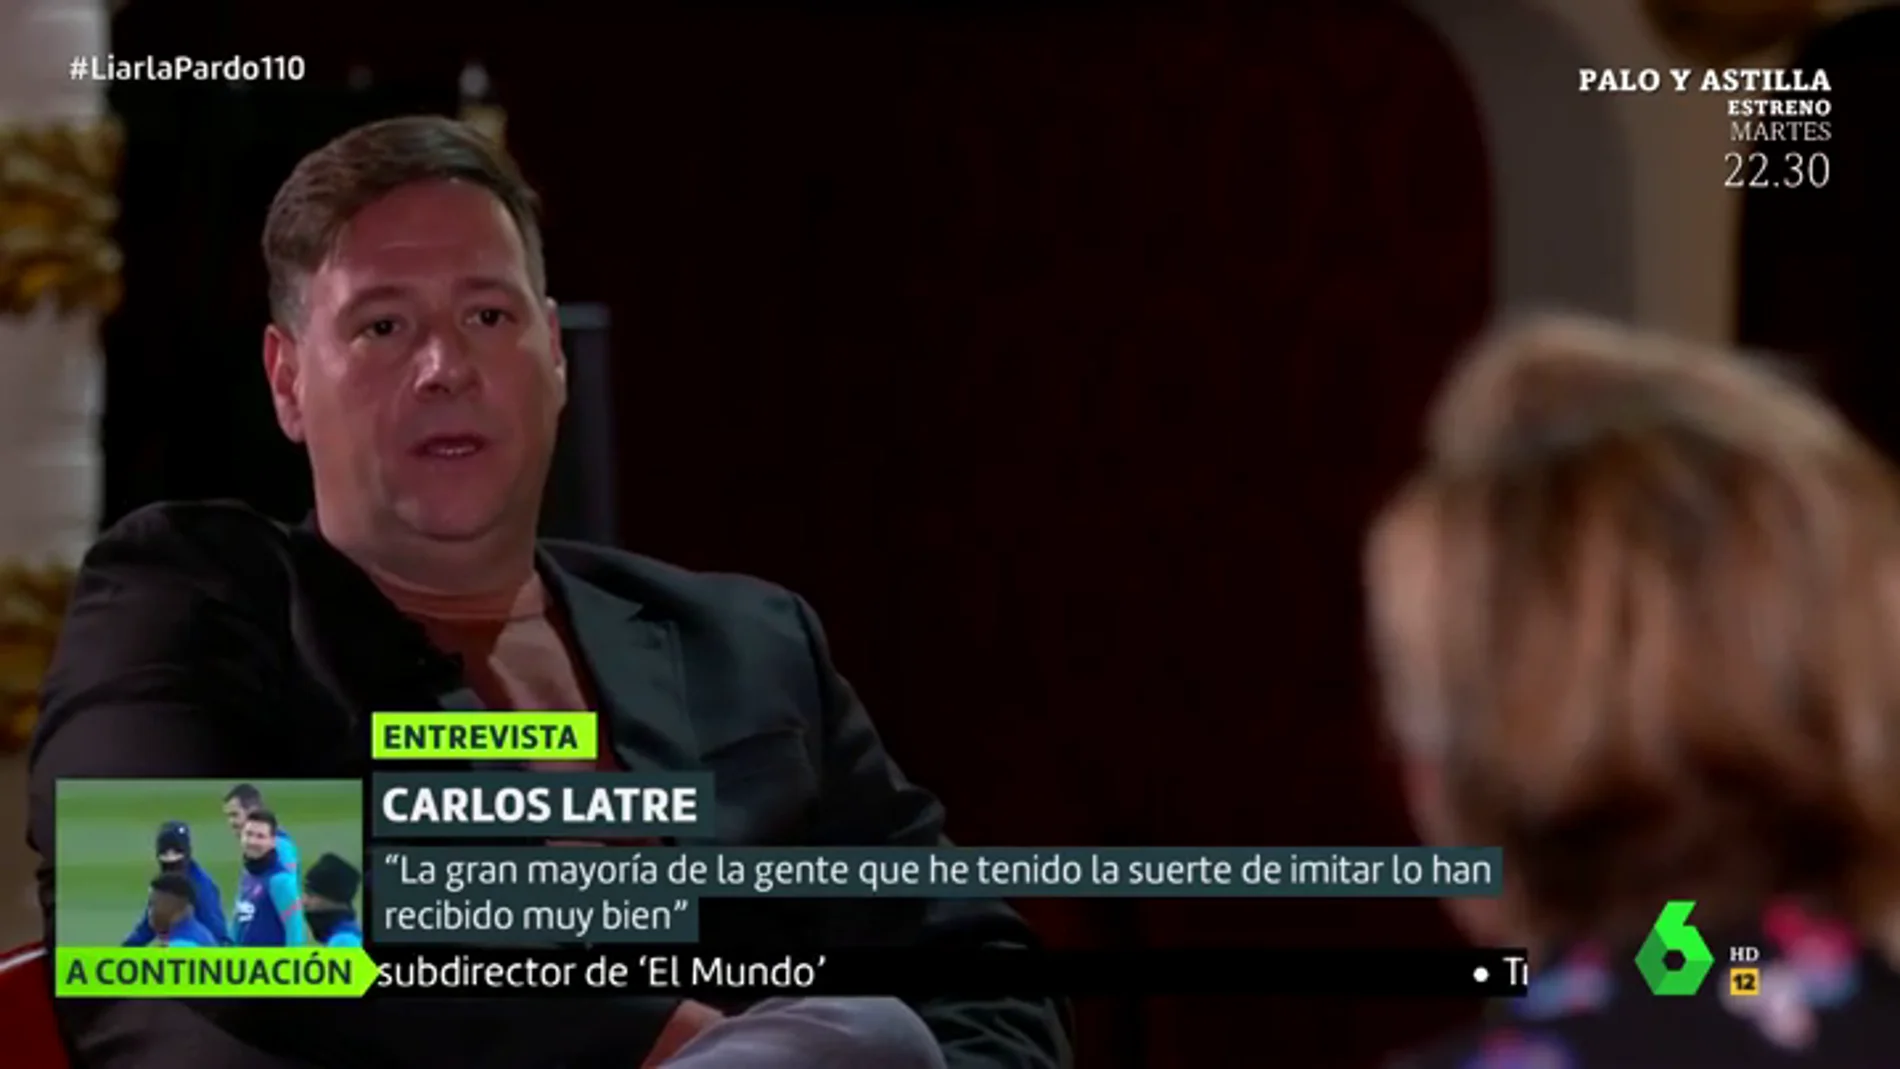 Carlos Latre en Liarla Pardo